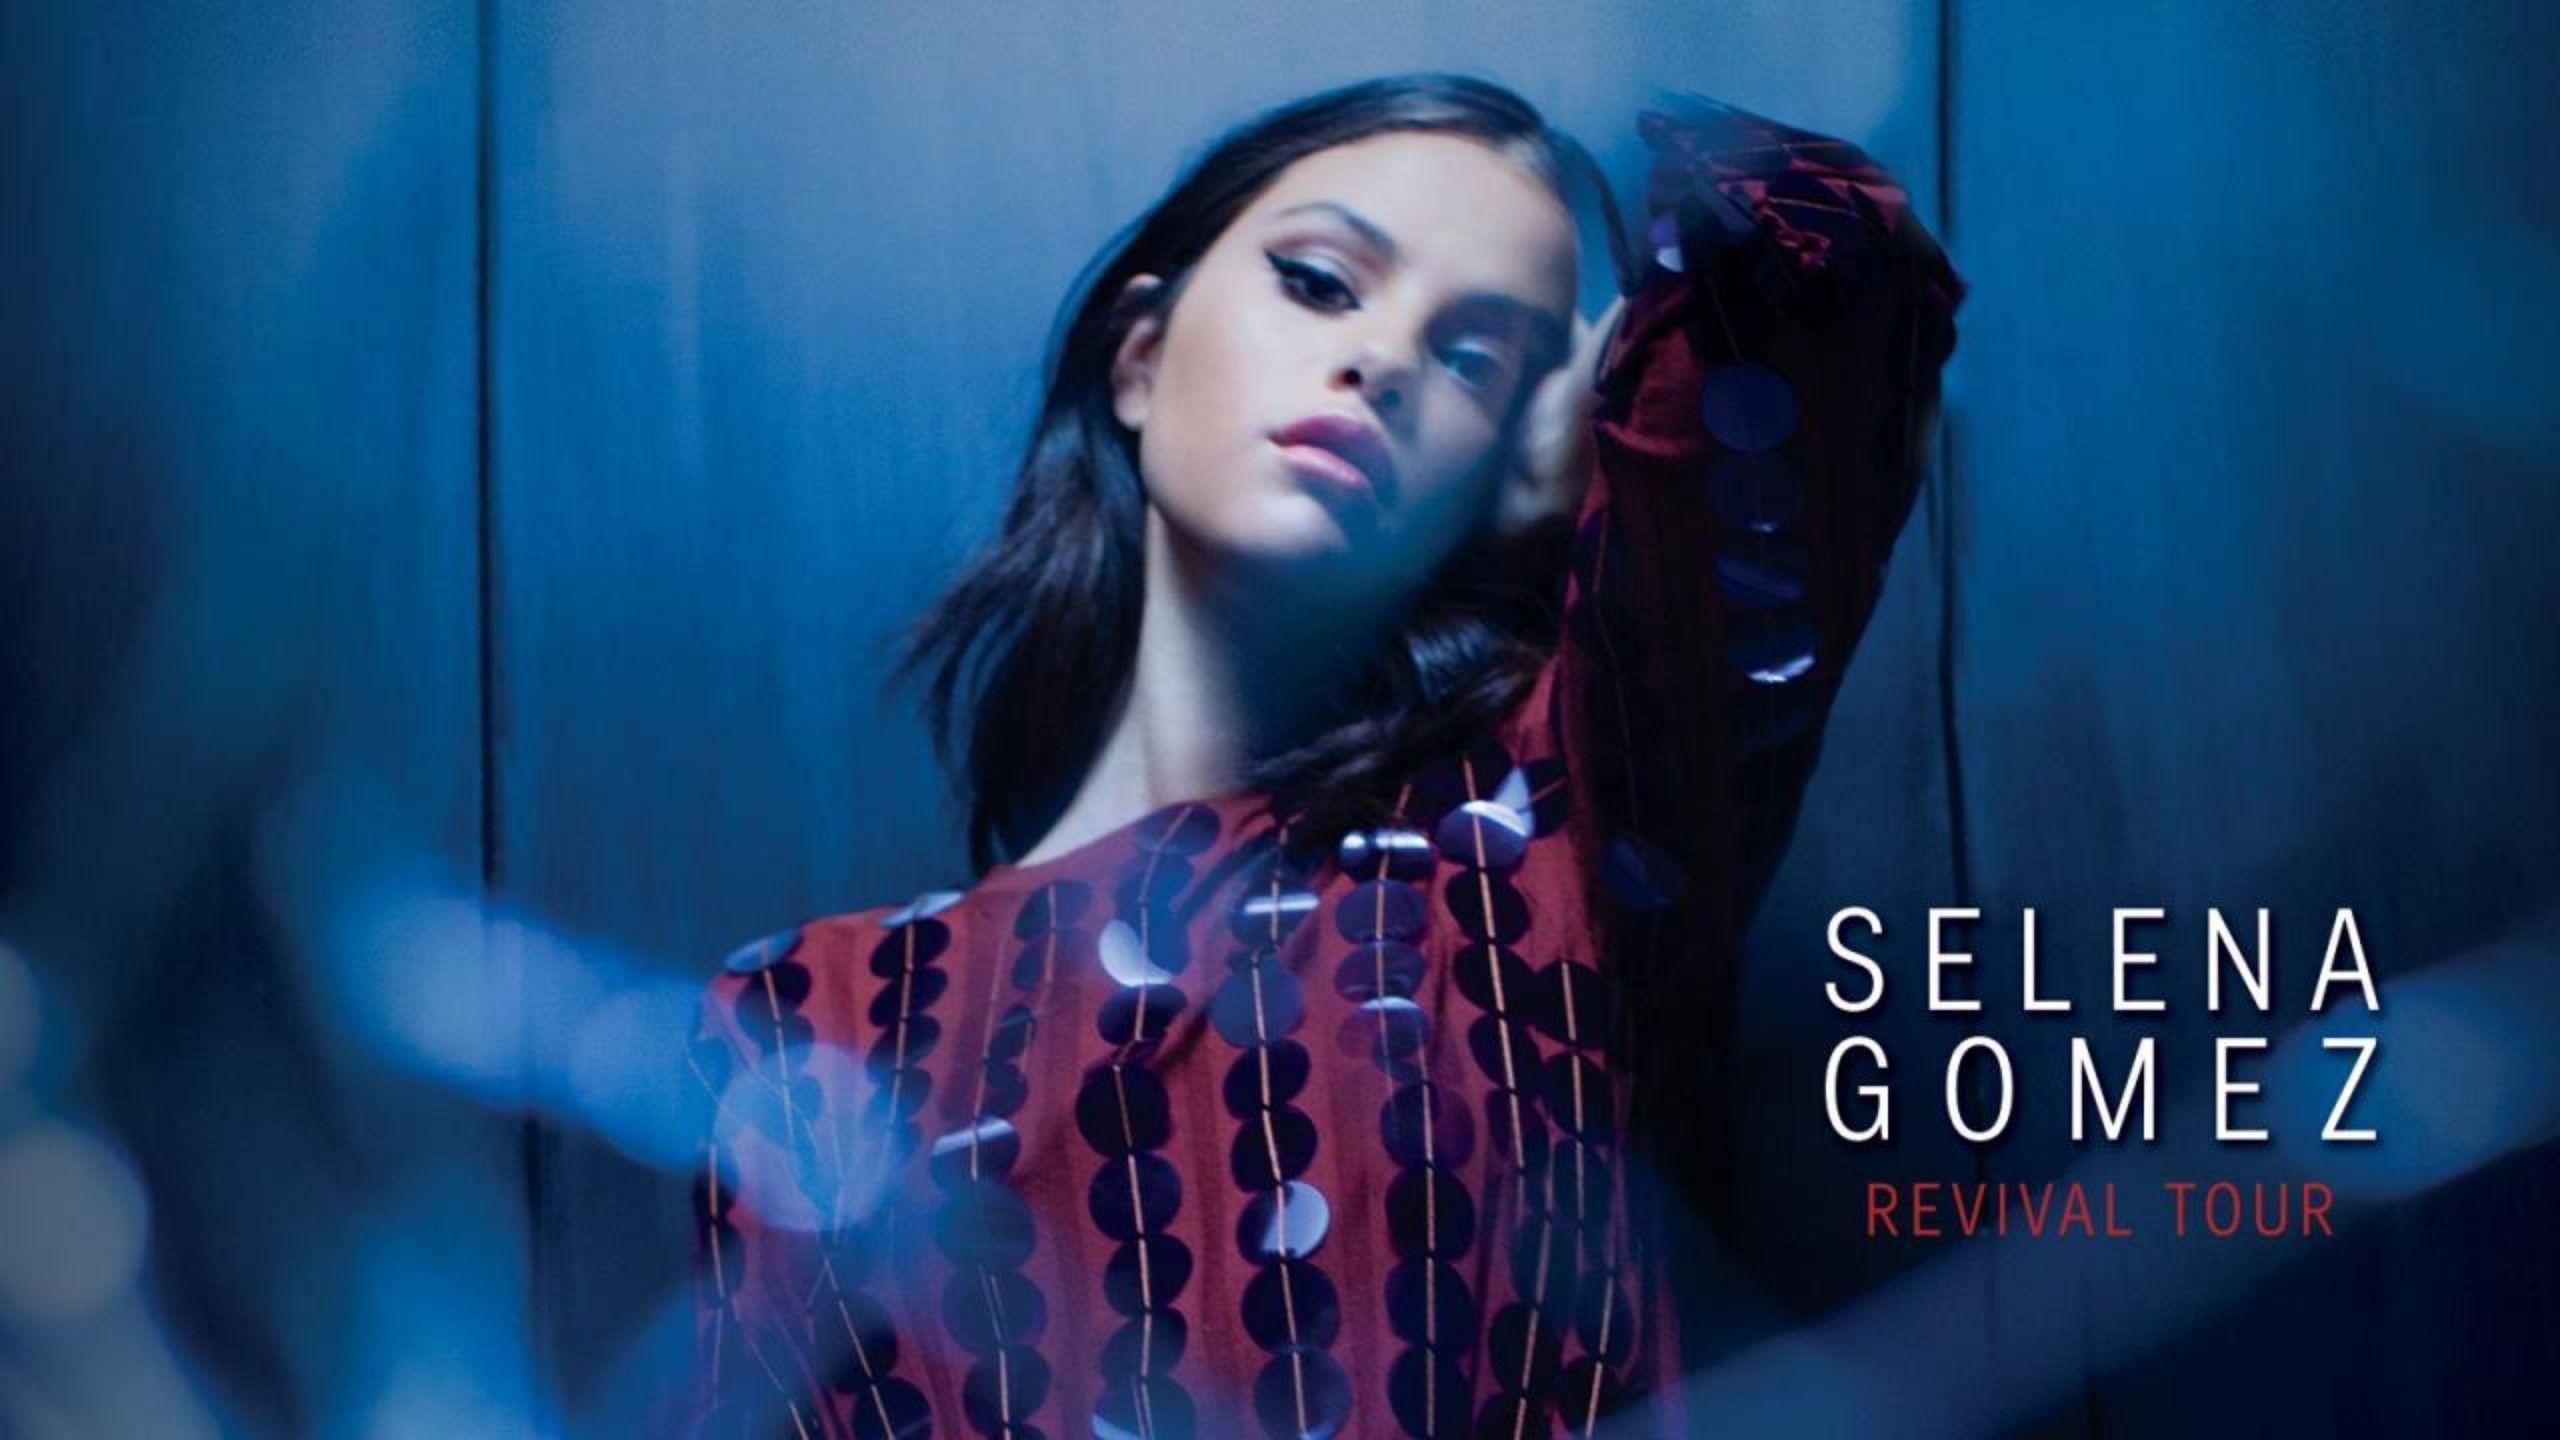 On Tour 2016 Selena Gomez 4K Wallpapers